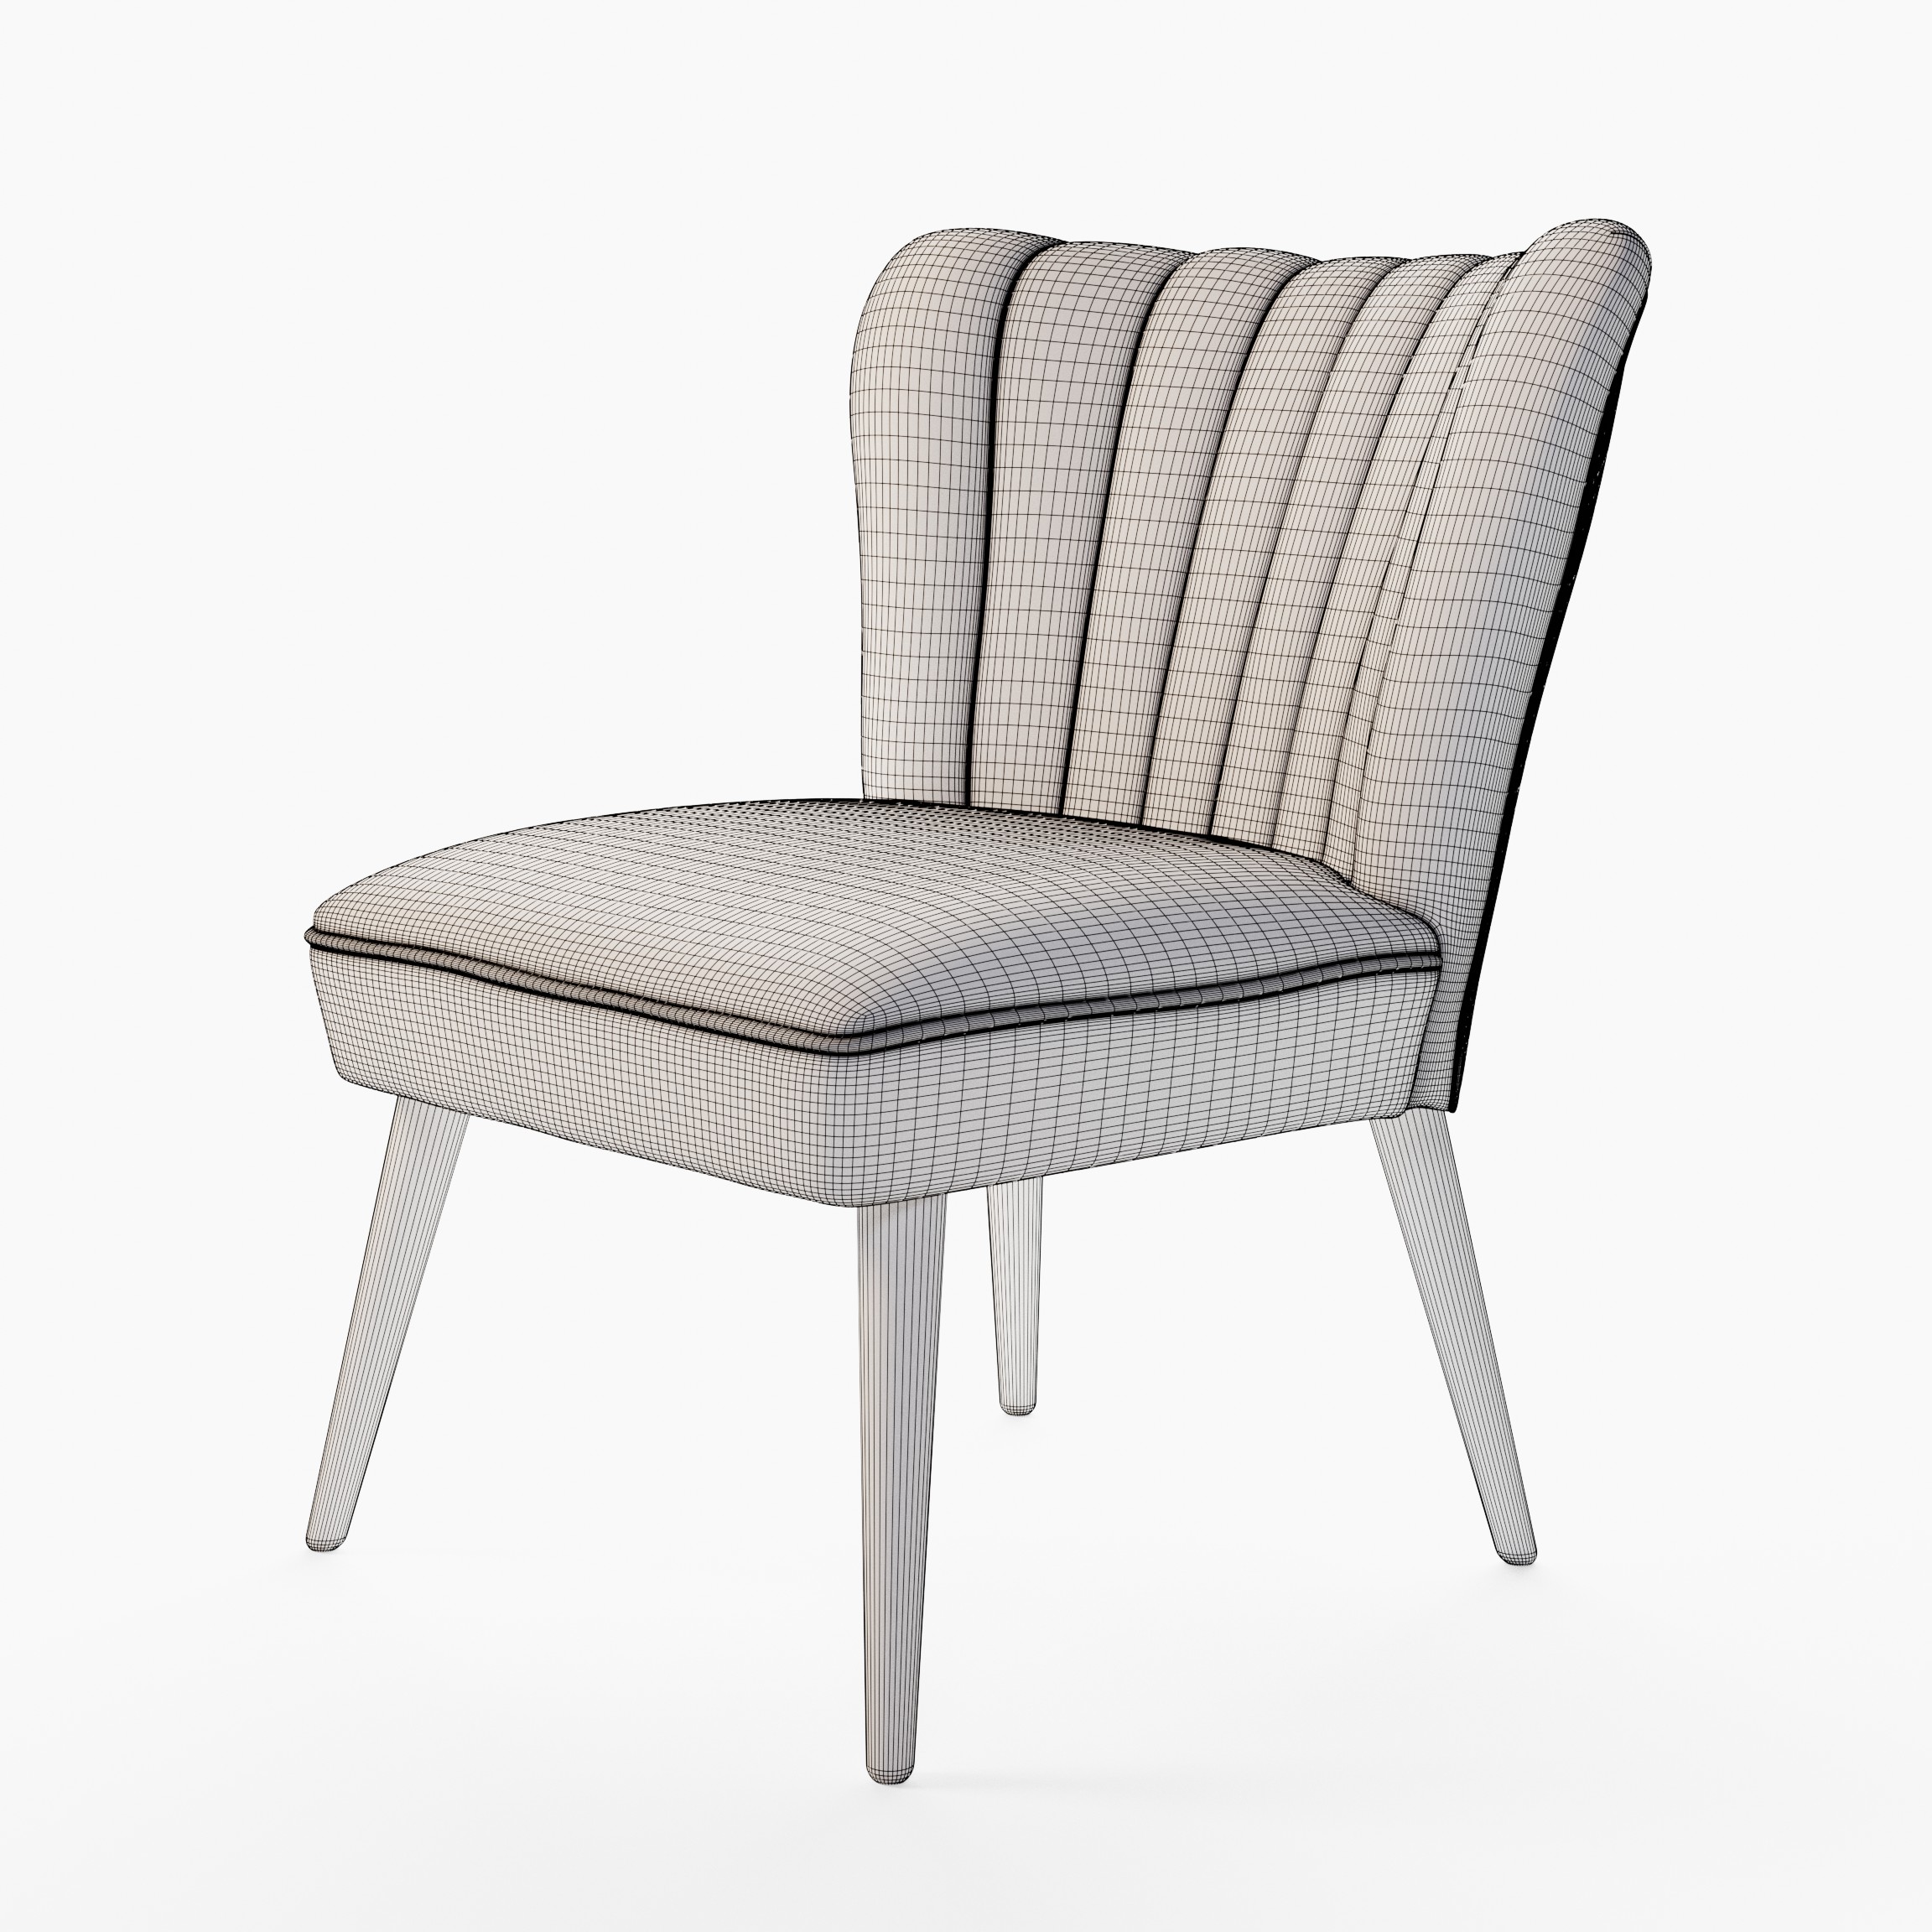 e-3d-model-of-armchair-made-in-blender-by-zatarski-05